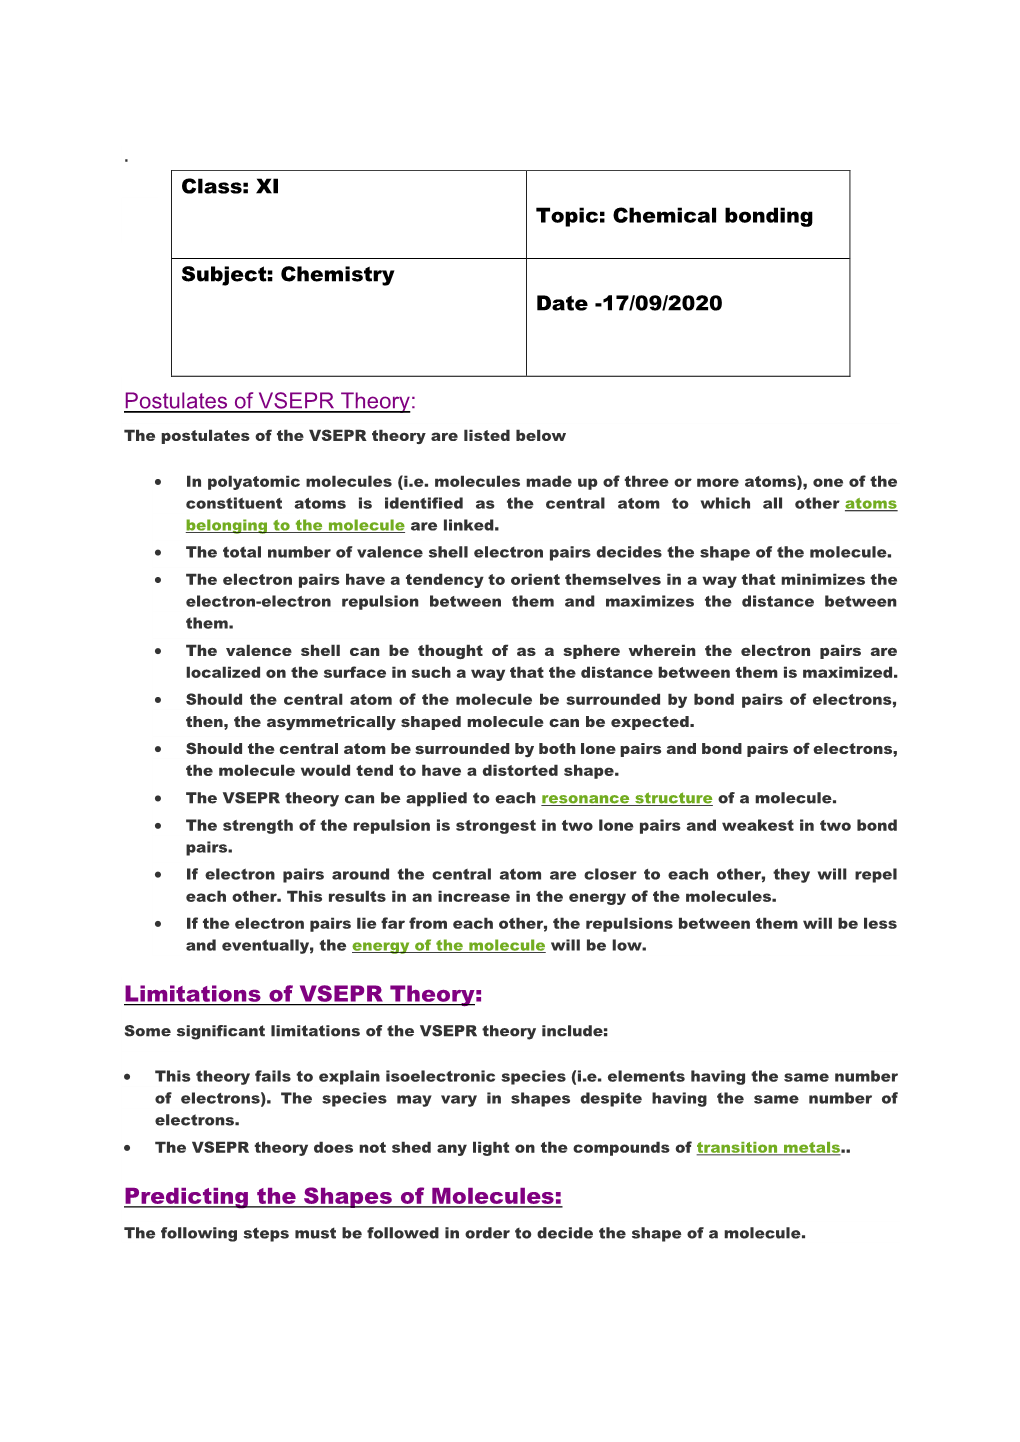 Postulates of VSEPR Theory: Limitations of VSEPR Theory